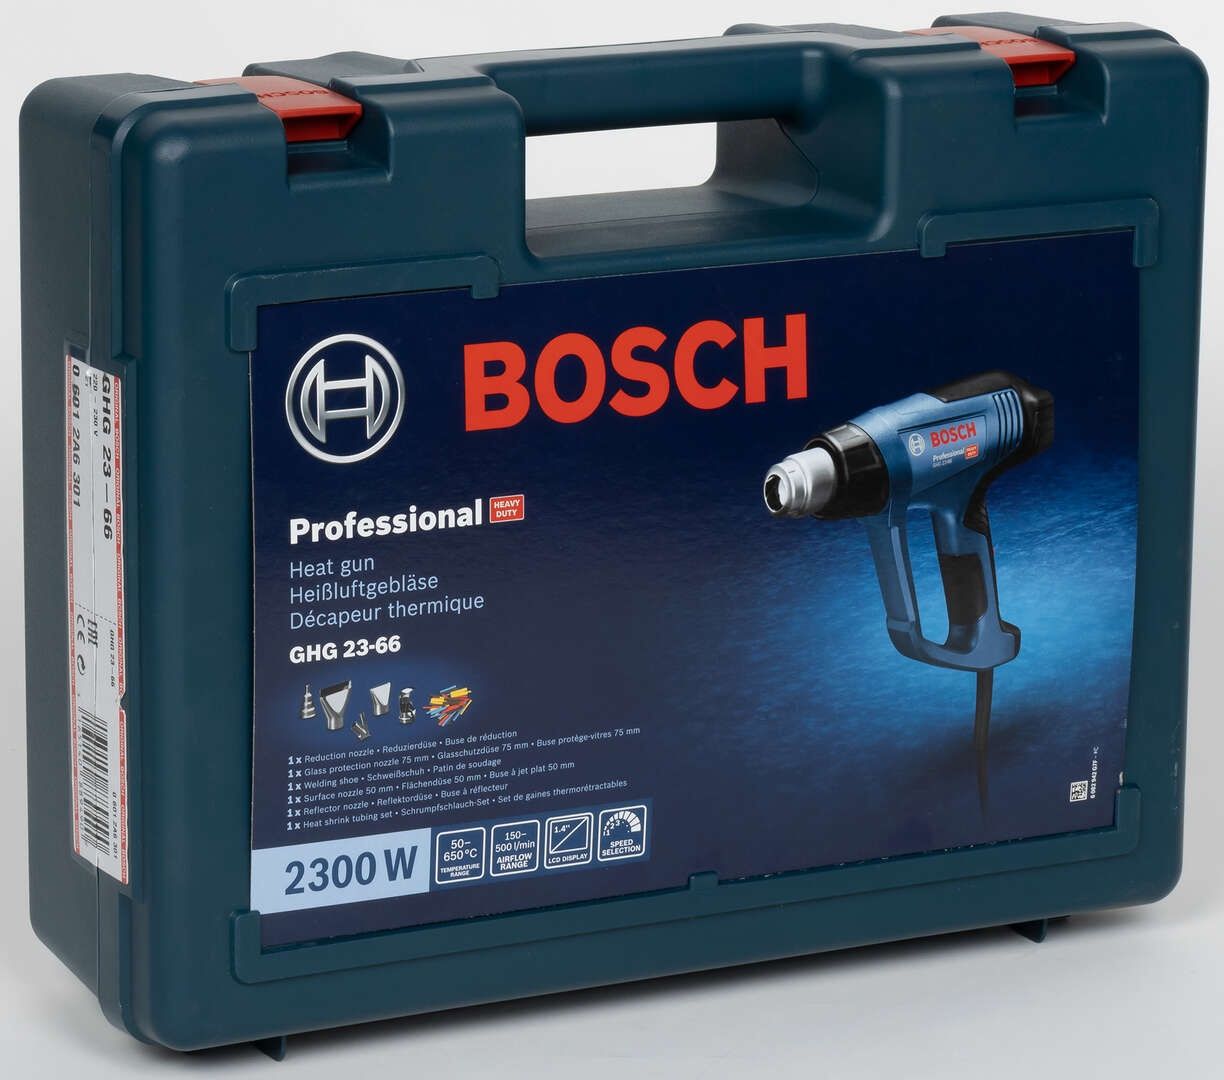 Технический фен Bosch GHG 23-66 Professional